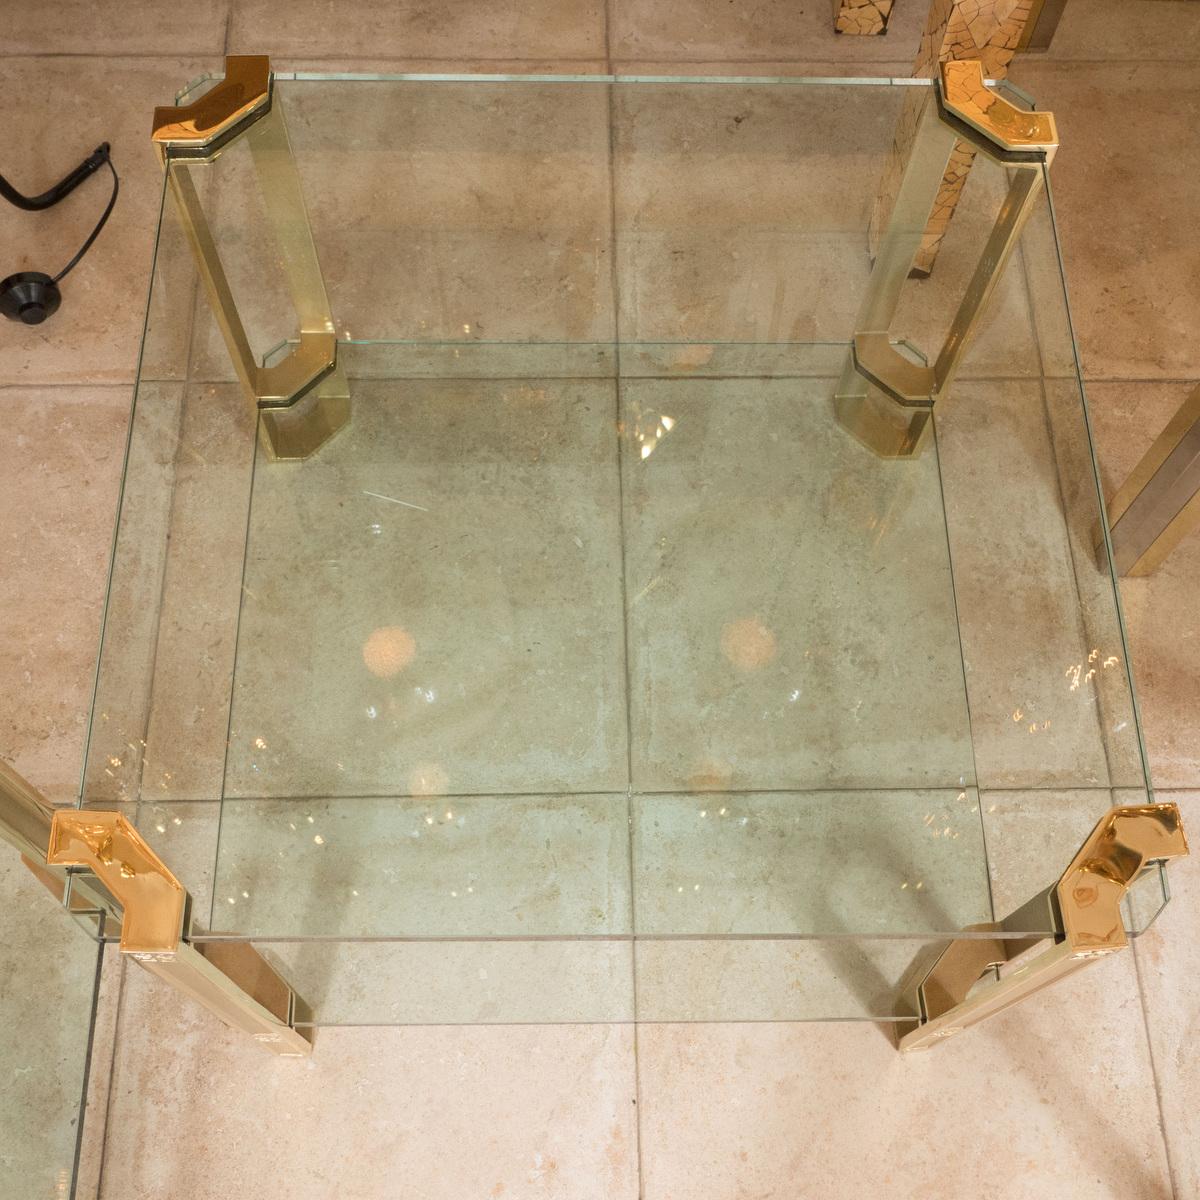 Paire de tables d'appoint carrées à deux niveaux en laiton et verre avec détails décoratifs.

Dimensions : 24.5